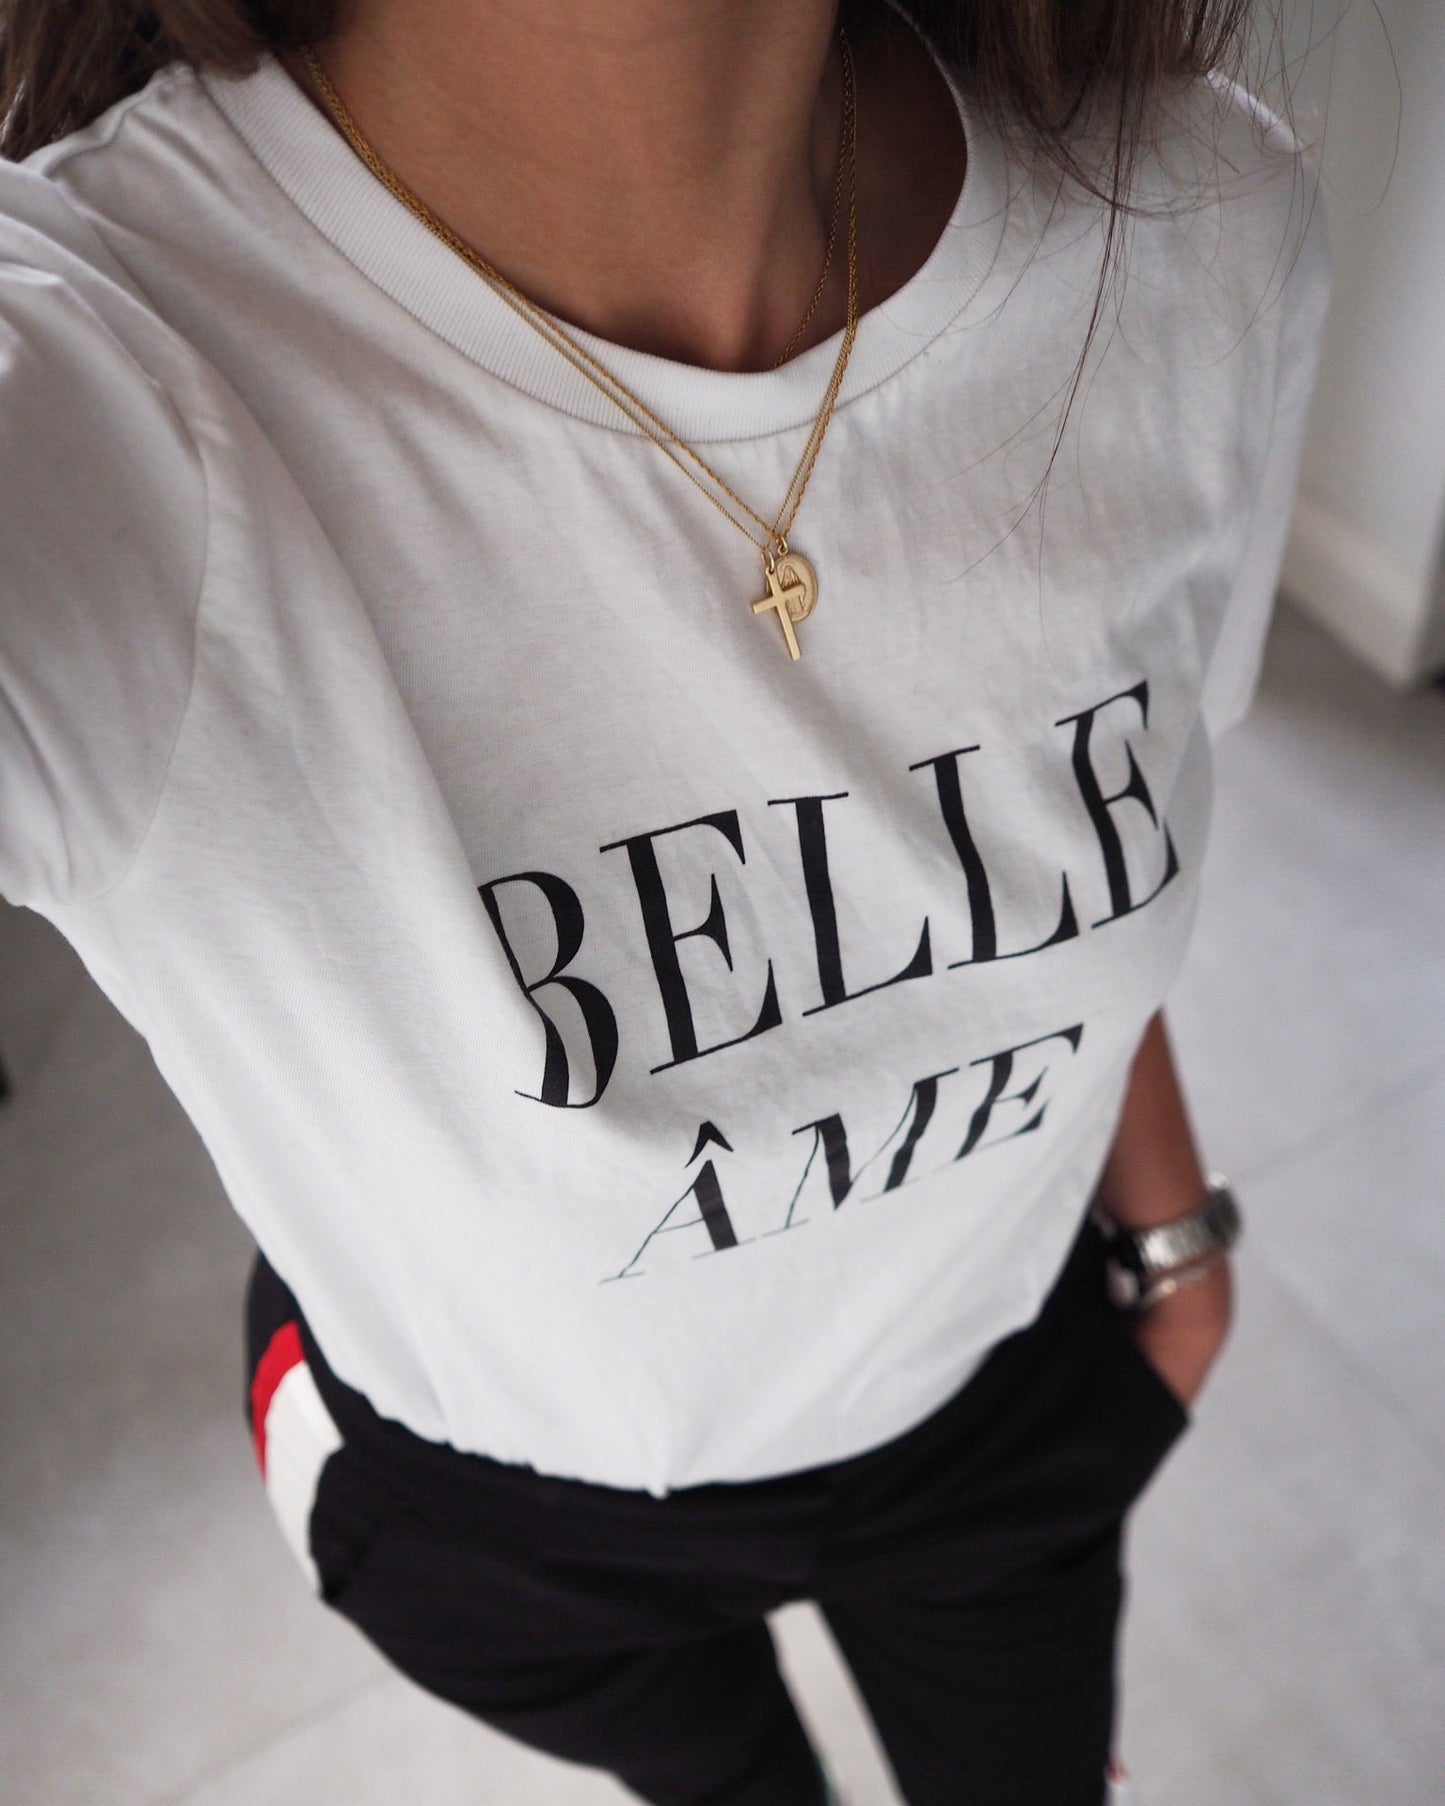 Belle Ame ♥︎ Print Tee